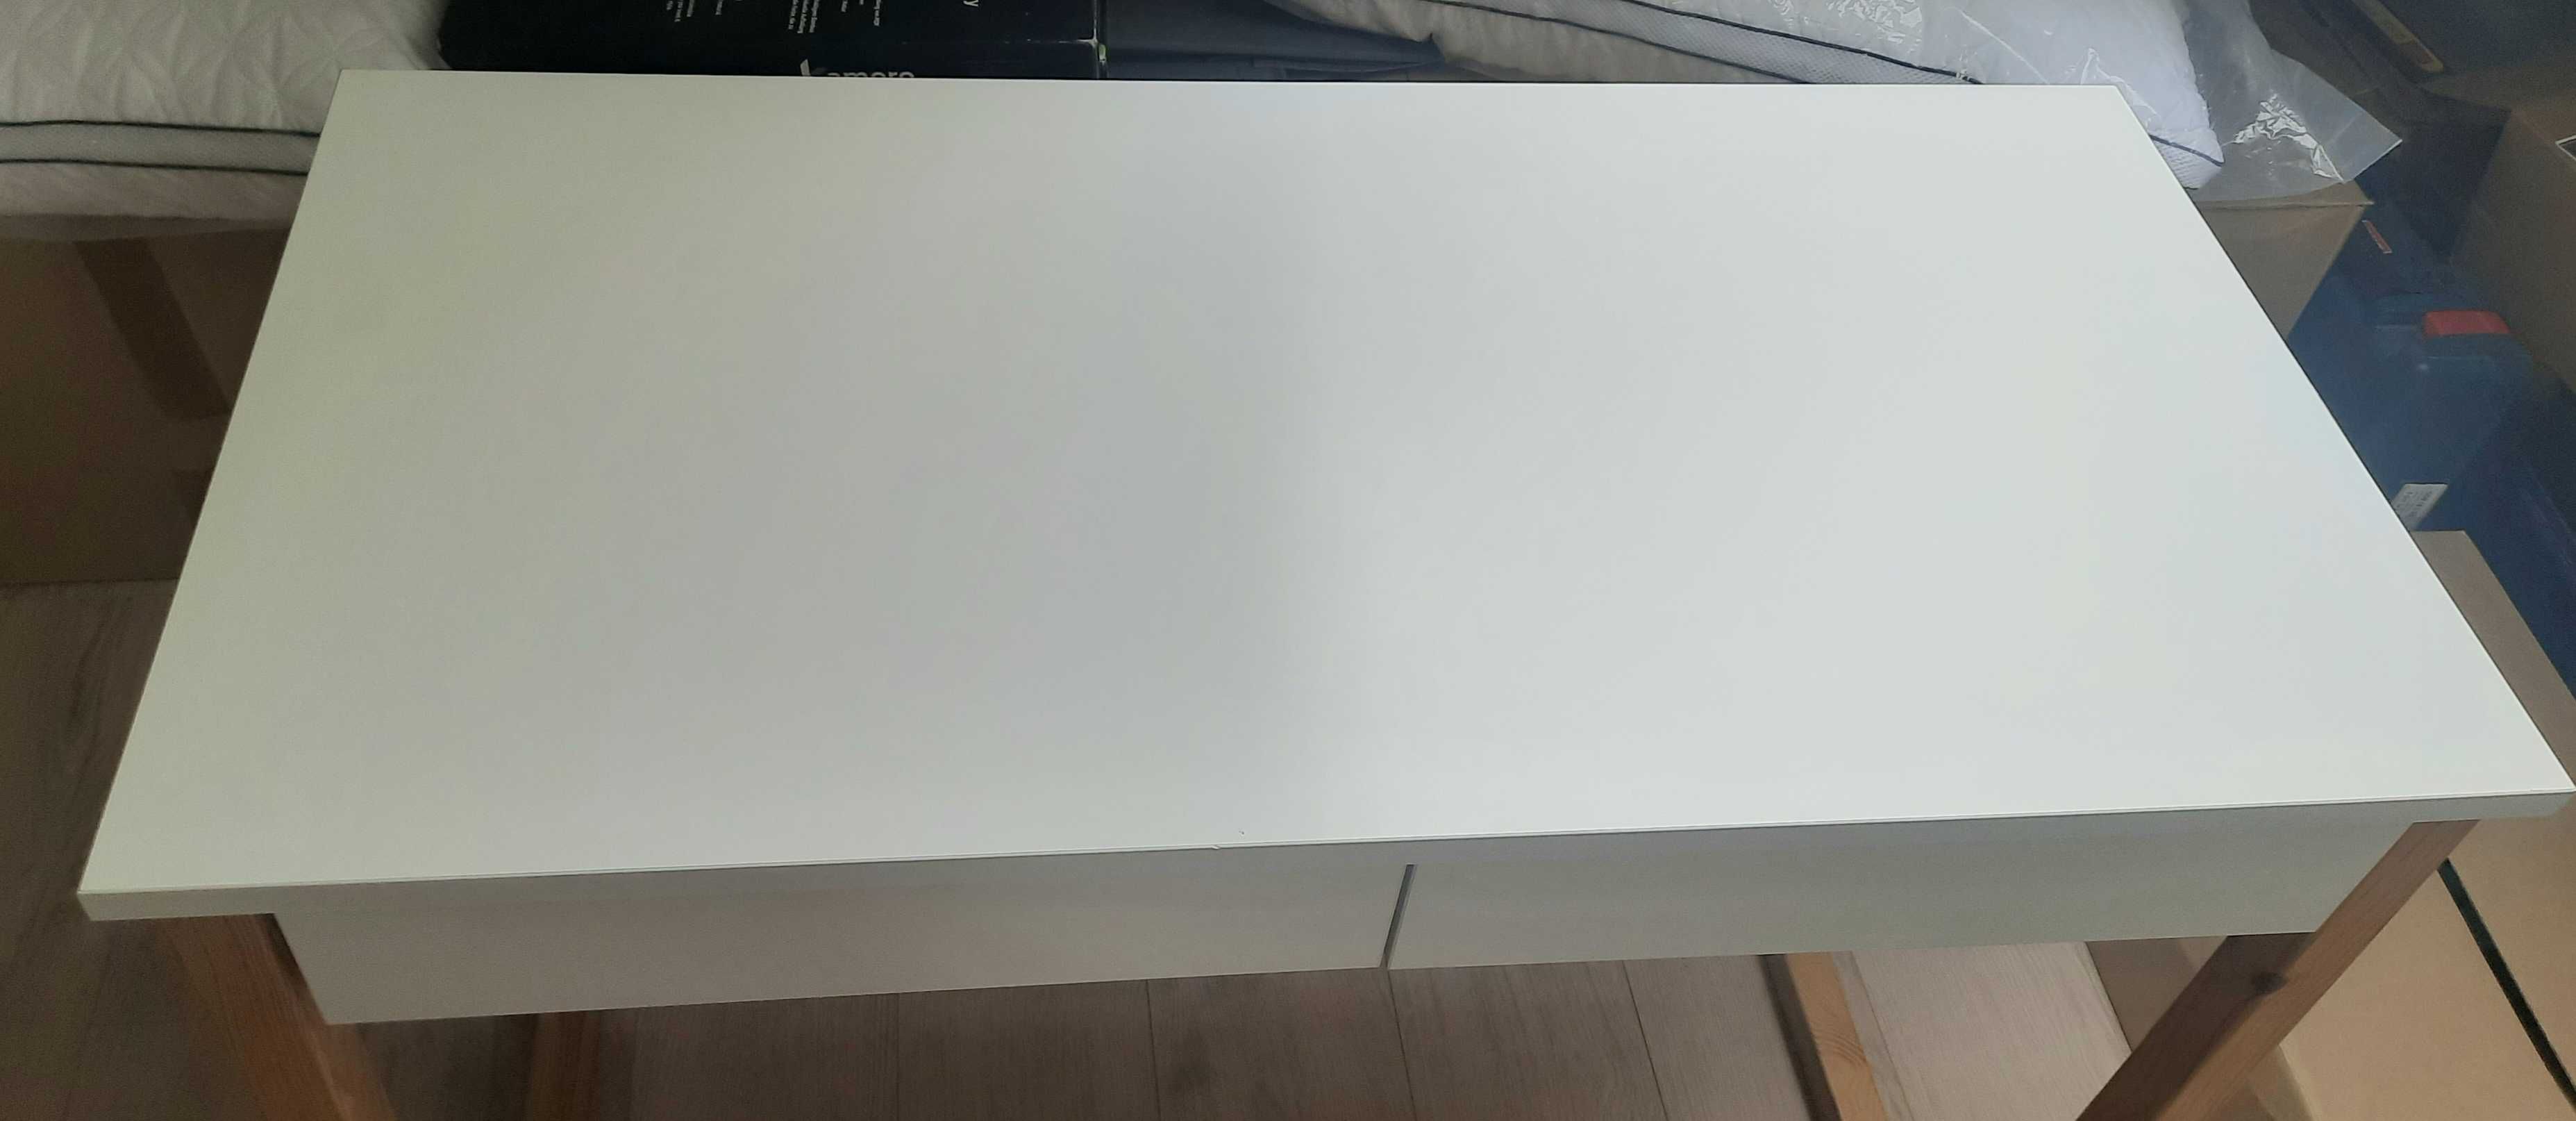 Toaletka/ biurko drewniane białe skandynawskie 100x50 cm